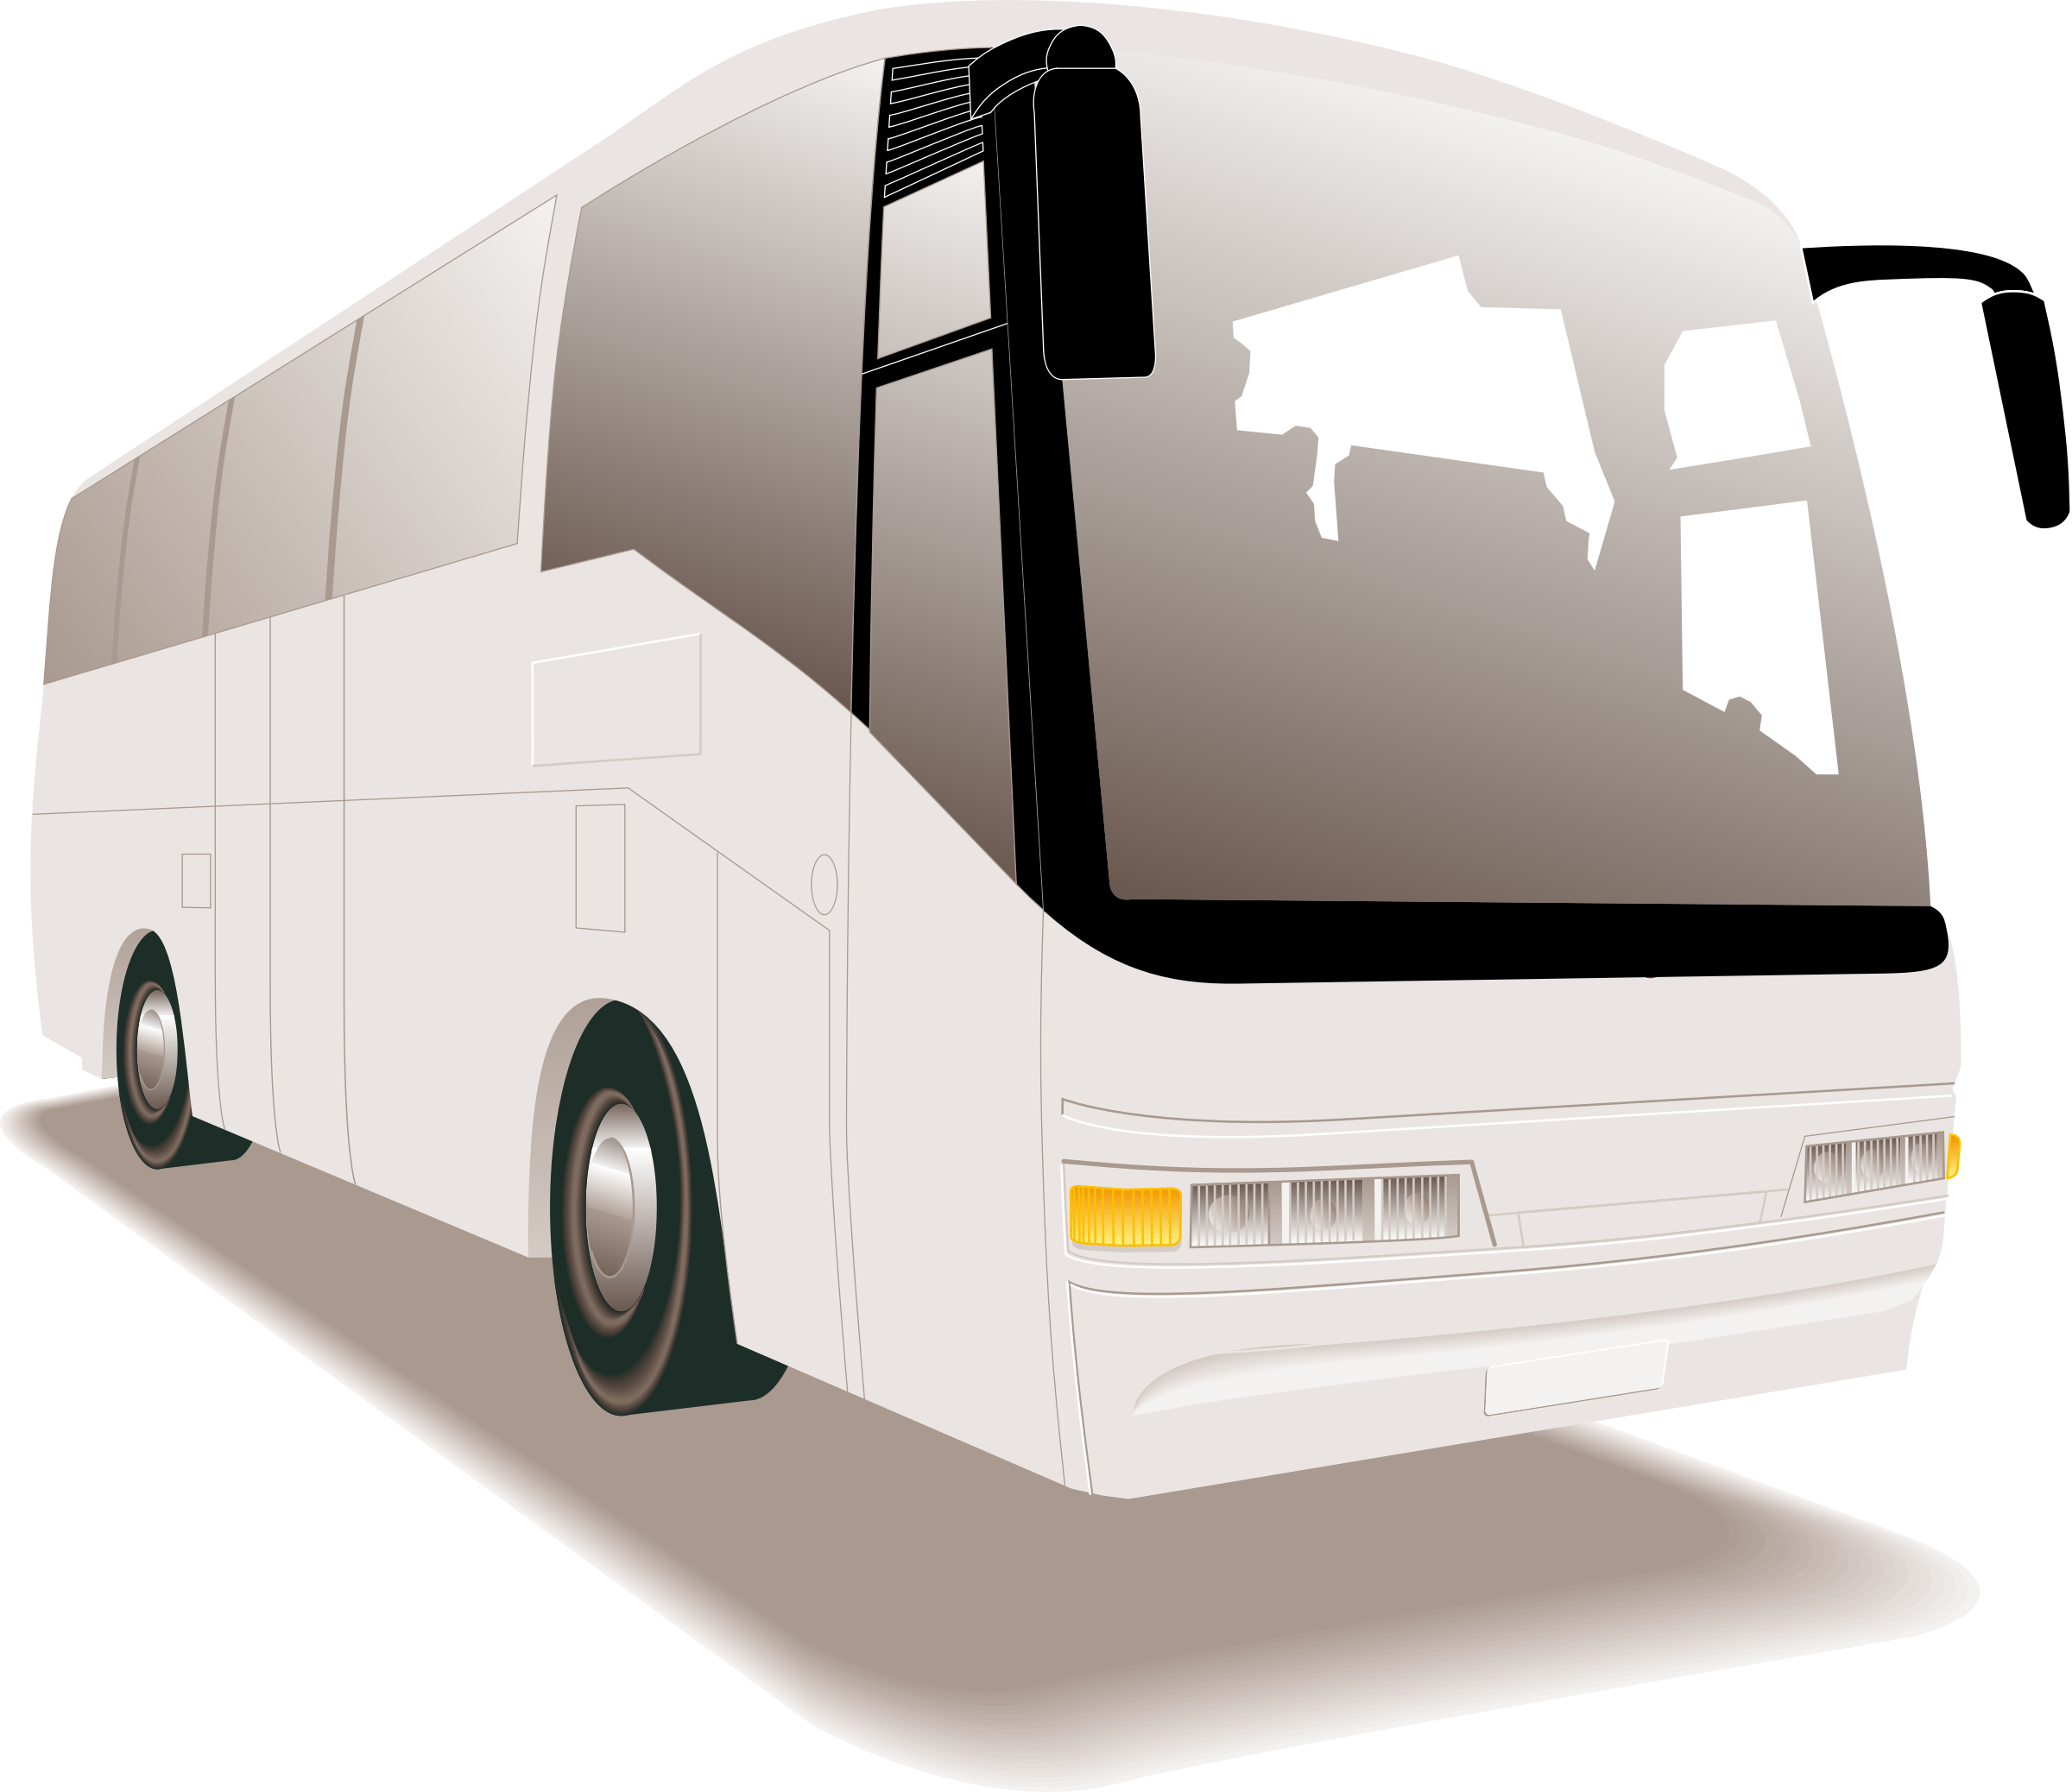 transportation clipart bus trip